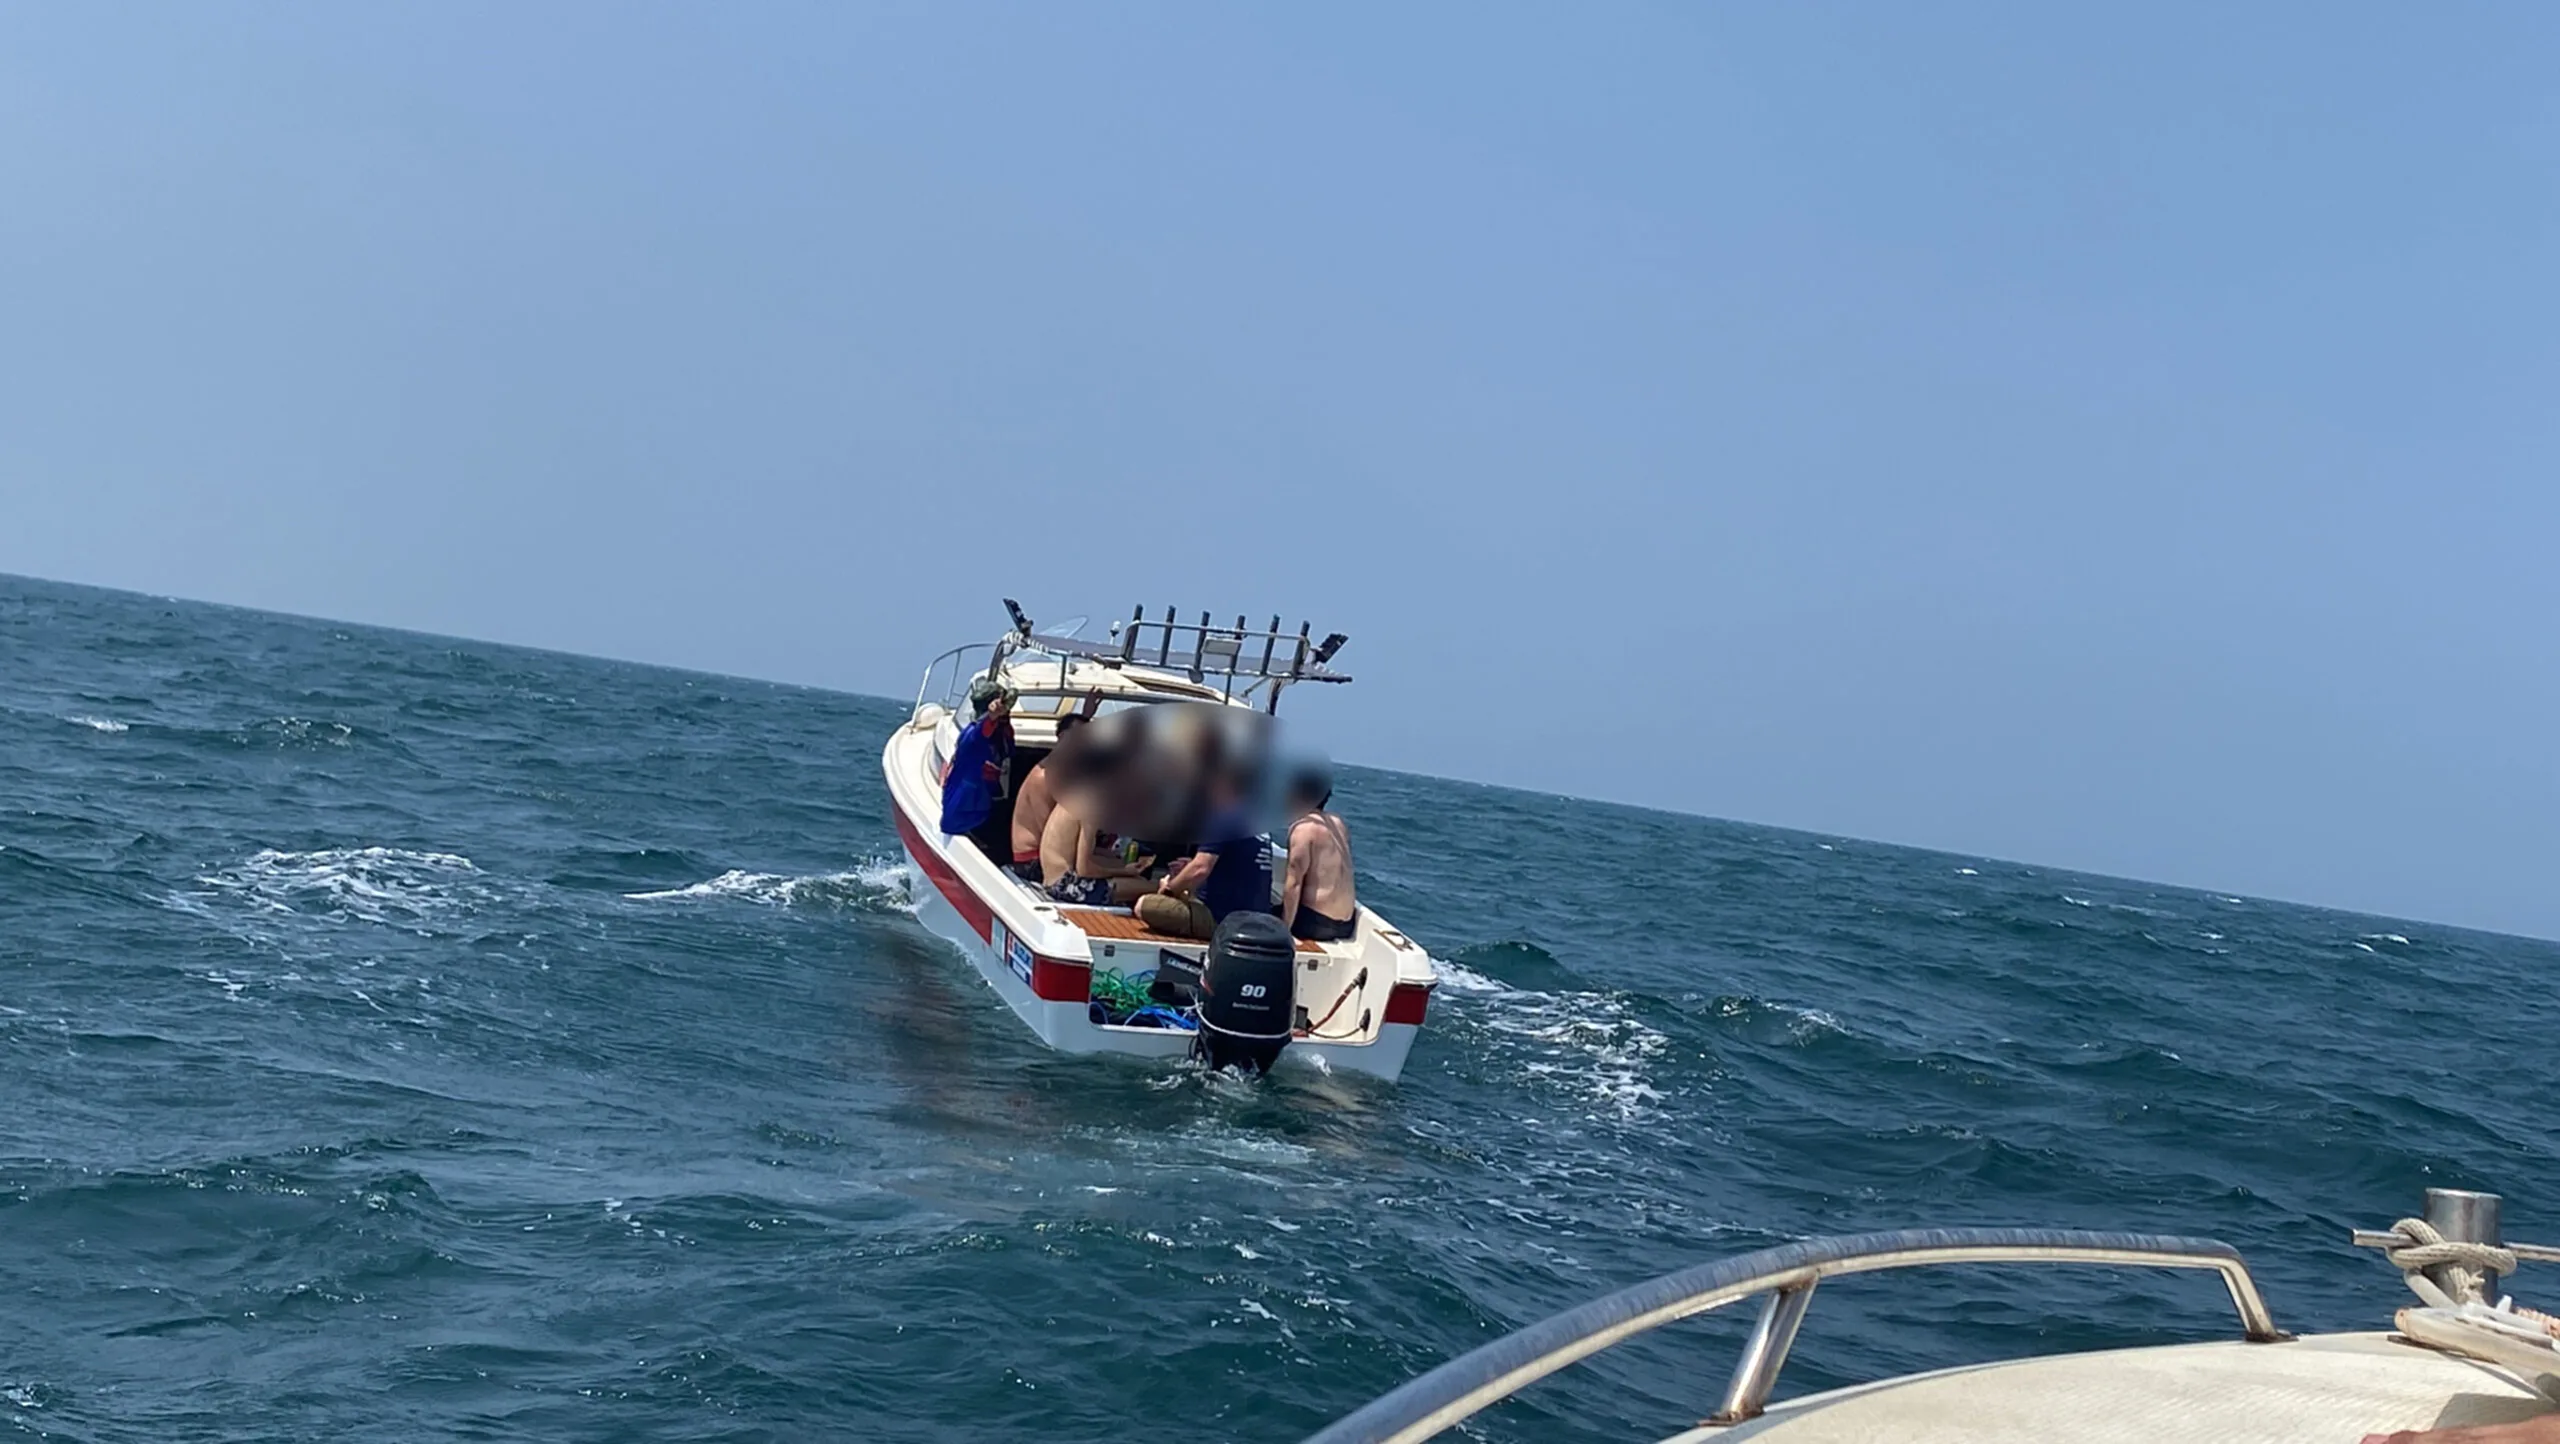 ตามหาวุ่น 4 ชีวิต นักดำน้ำชาวต่างชาติ หลังเรือลอยเคว้งกลางทะเล โชคช่วยพบติดเกาะมารวิชัย